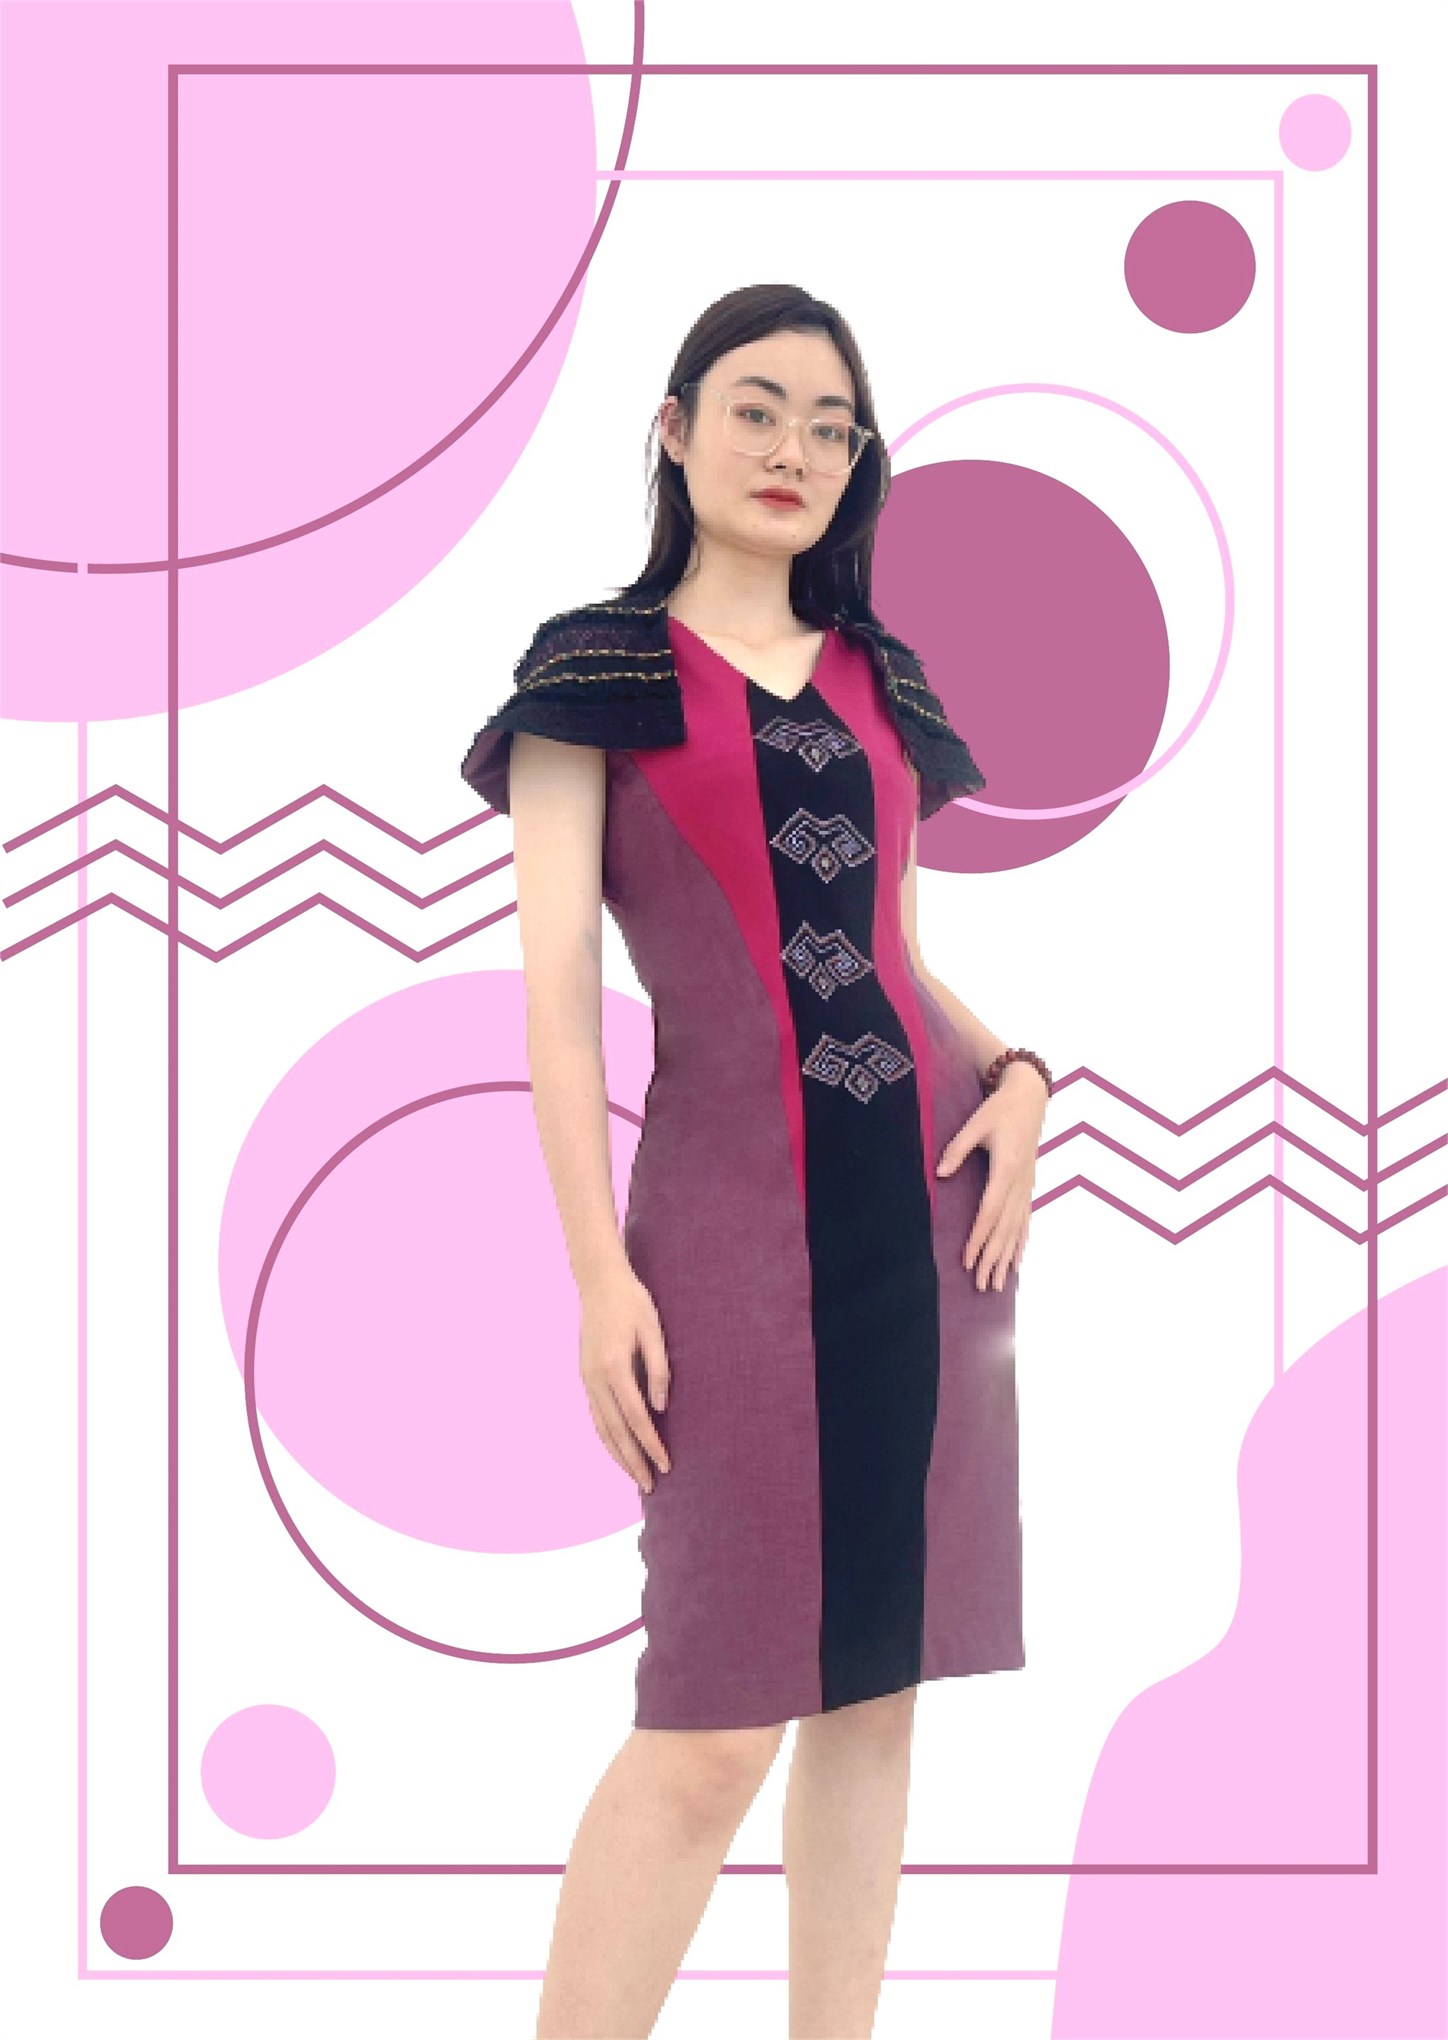 Nghiệm thu đề tài NCKH cấp Trường: “Nghiên cứu thiết kế trang phục hiện đại ứng dụng giá trị thẩm mỹ trong nghệ thuật tạo hình dân gian Việt Nam”